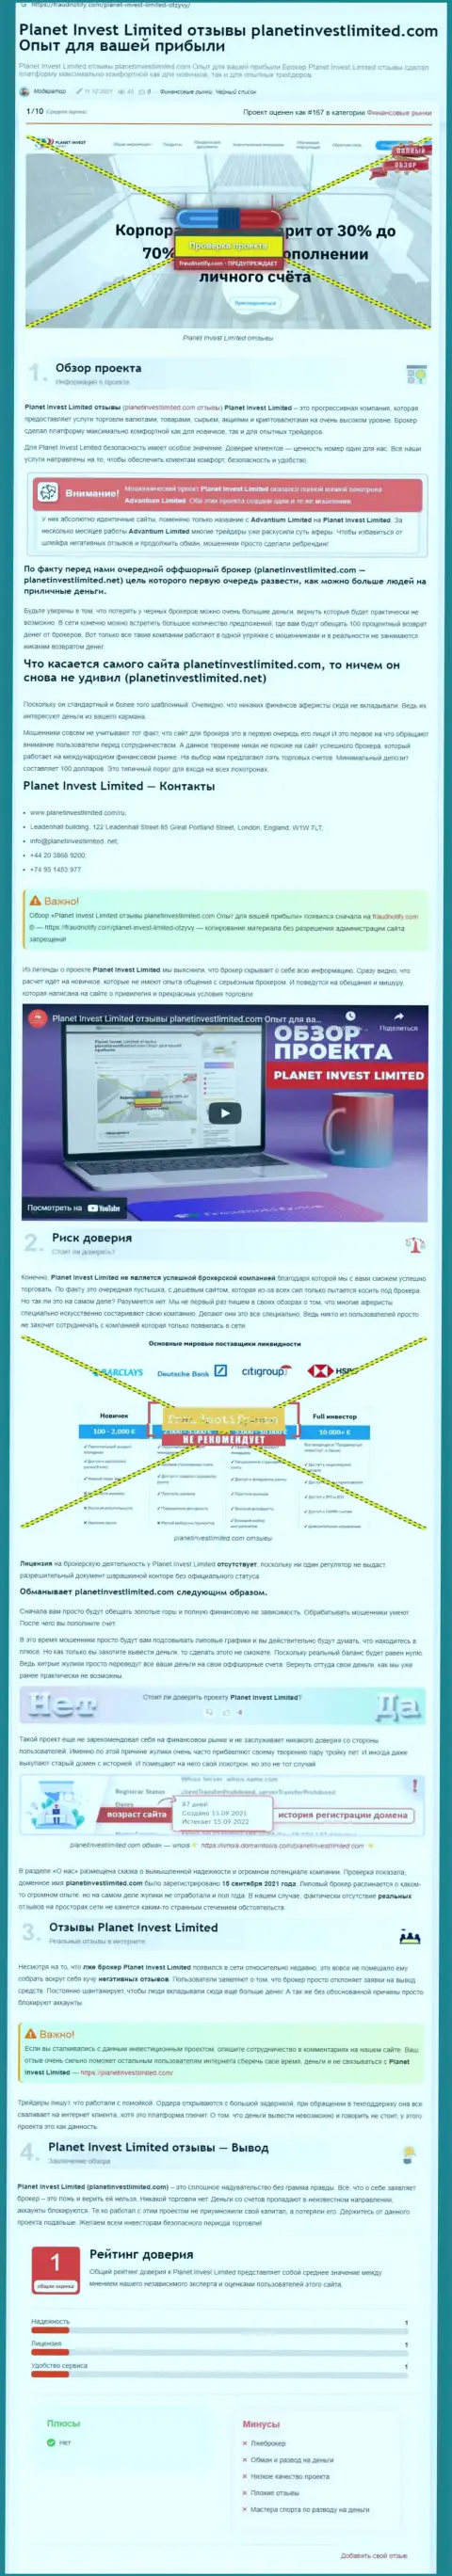 Обзор компании Планет Инвест Лимитед, зарекомендовавшей себя, как интернет-мошенника